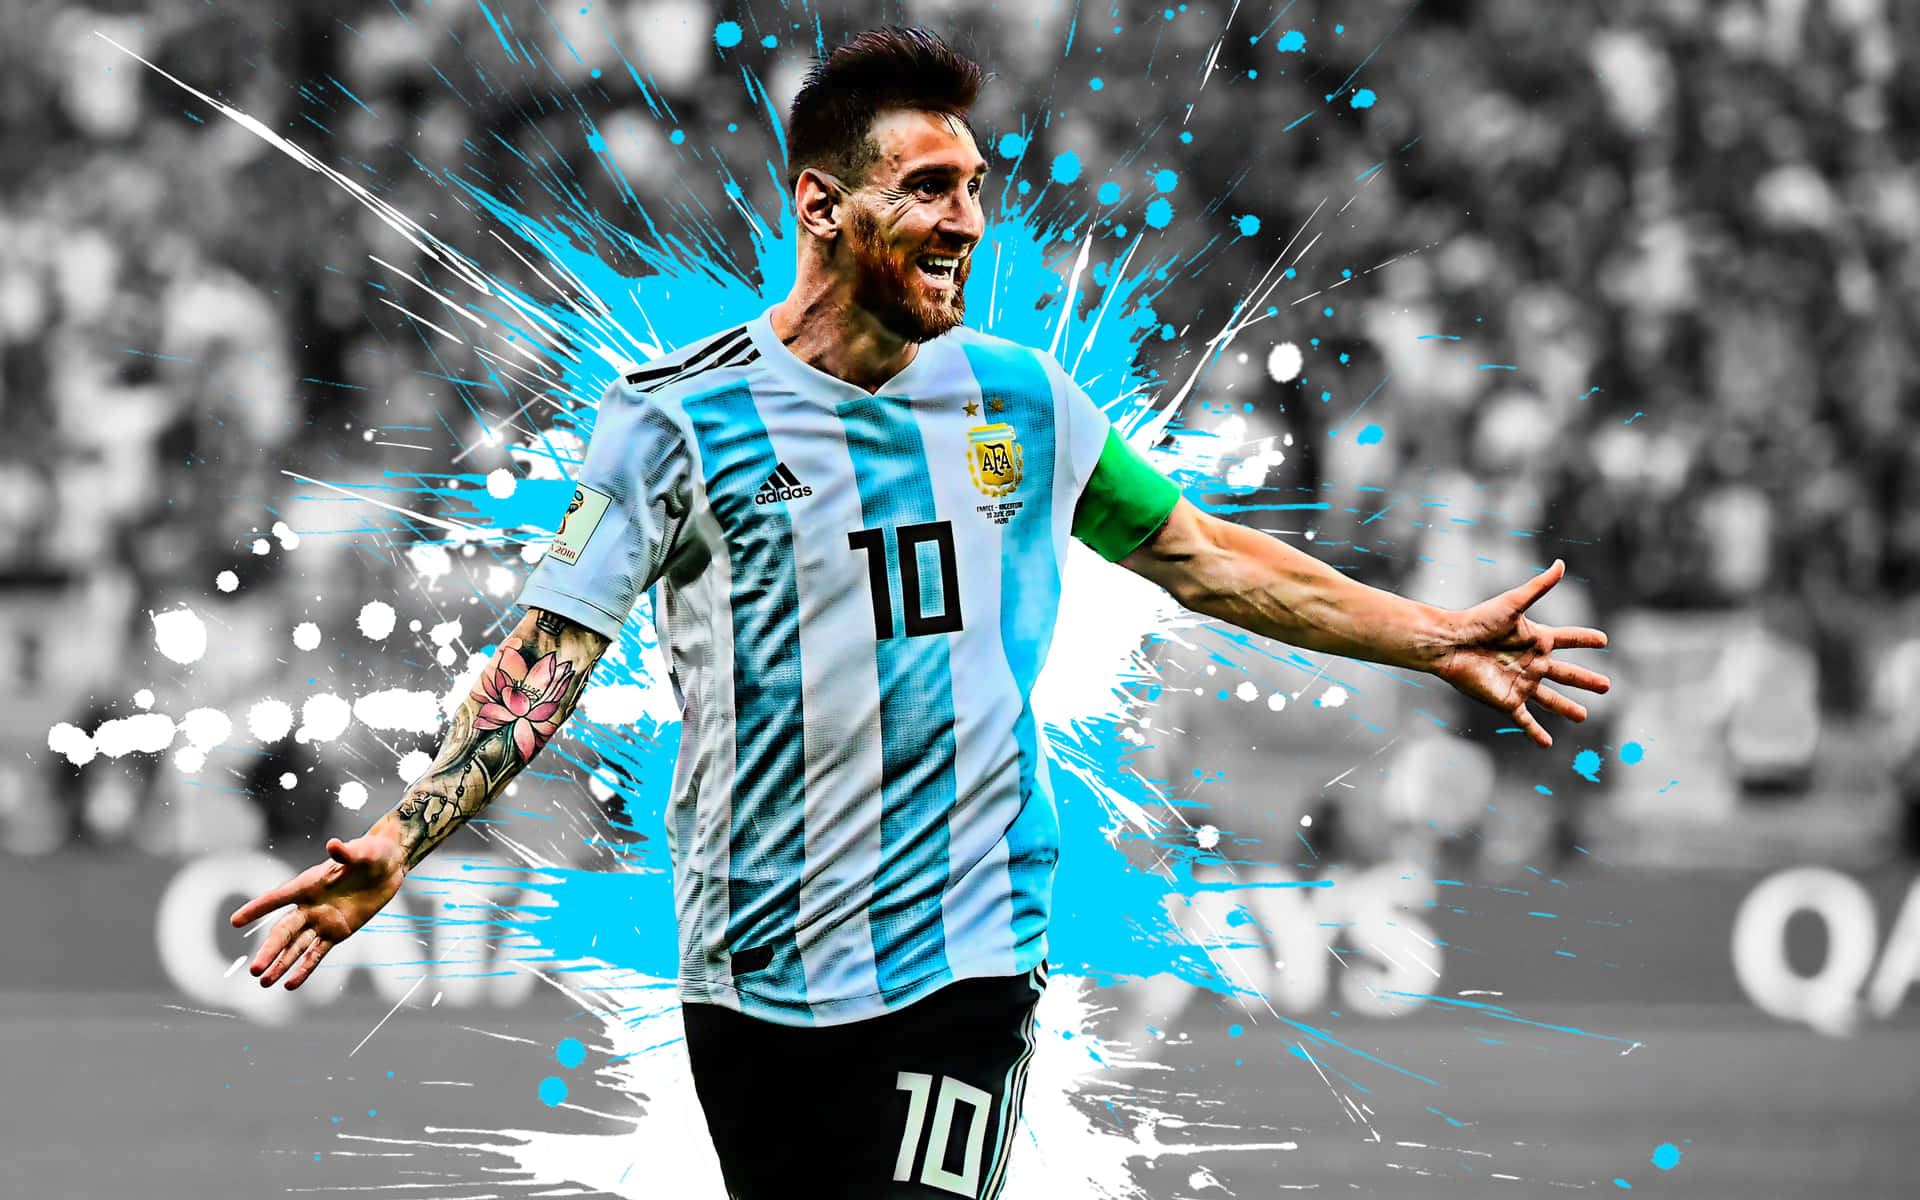 Ikonisklionel Messi, Berømt Fodboldspiller